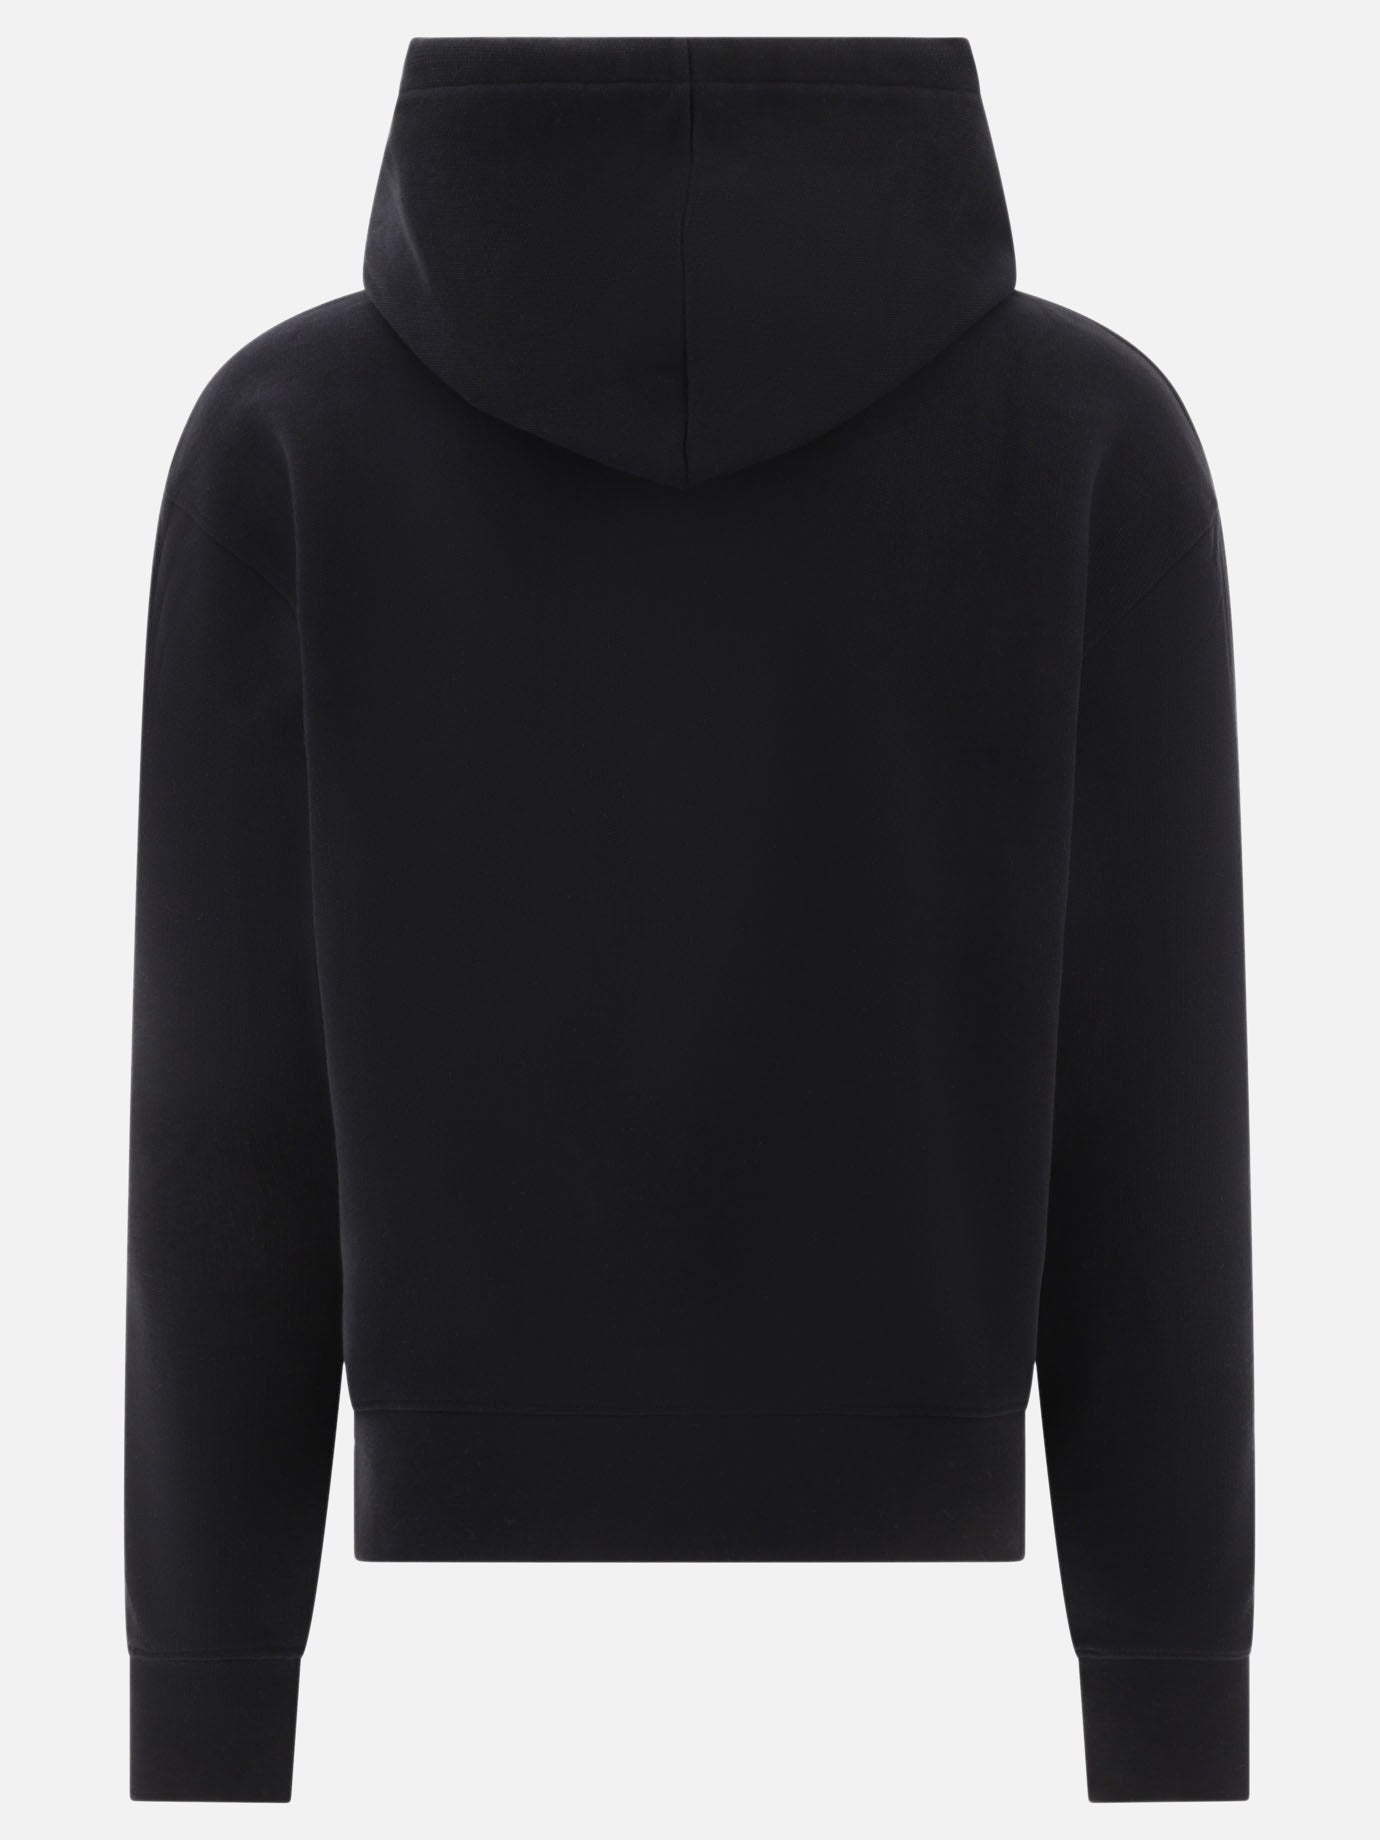 "Le sweatshirt brodé" hoodie